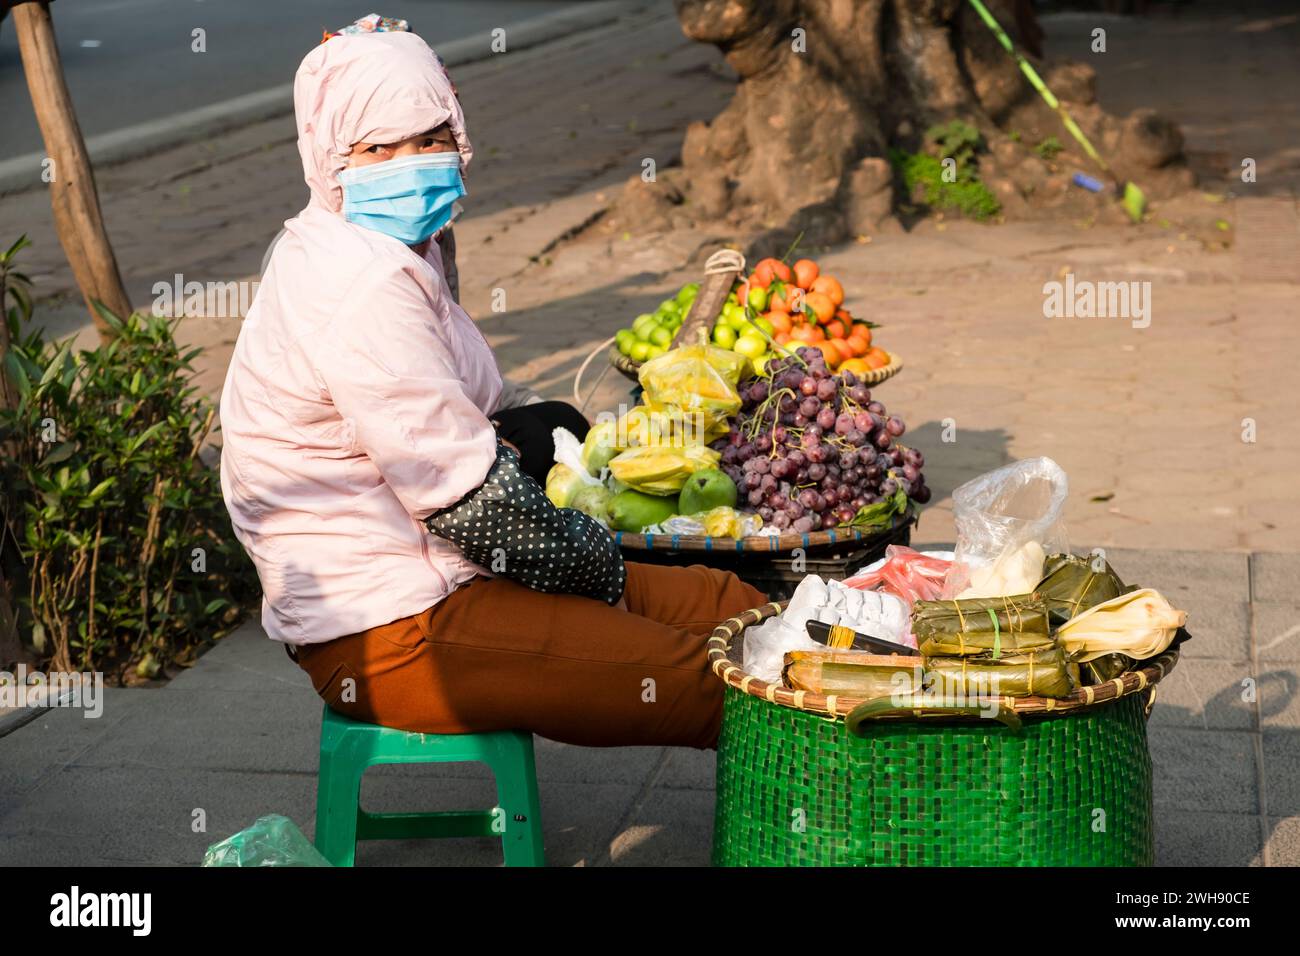 Frau mit Gesichtsmaske, die frisches Obst auf den Straßen von Hanoi, Vietnam, verkauft Stockfoto